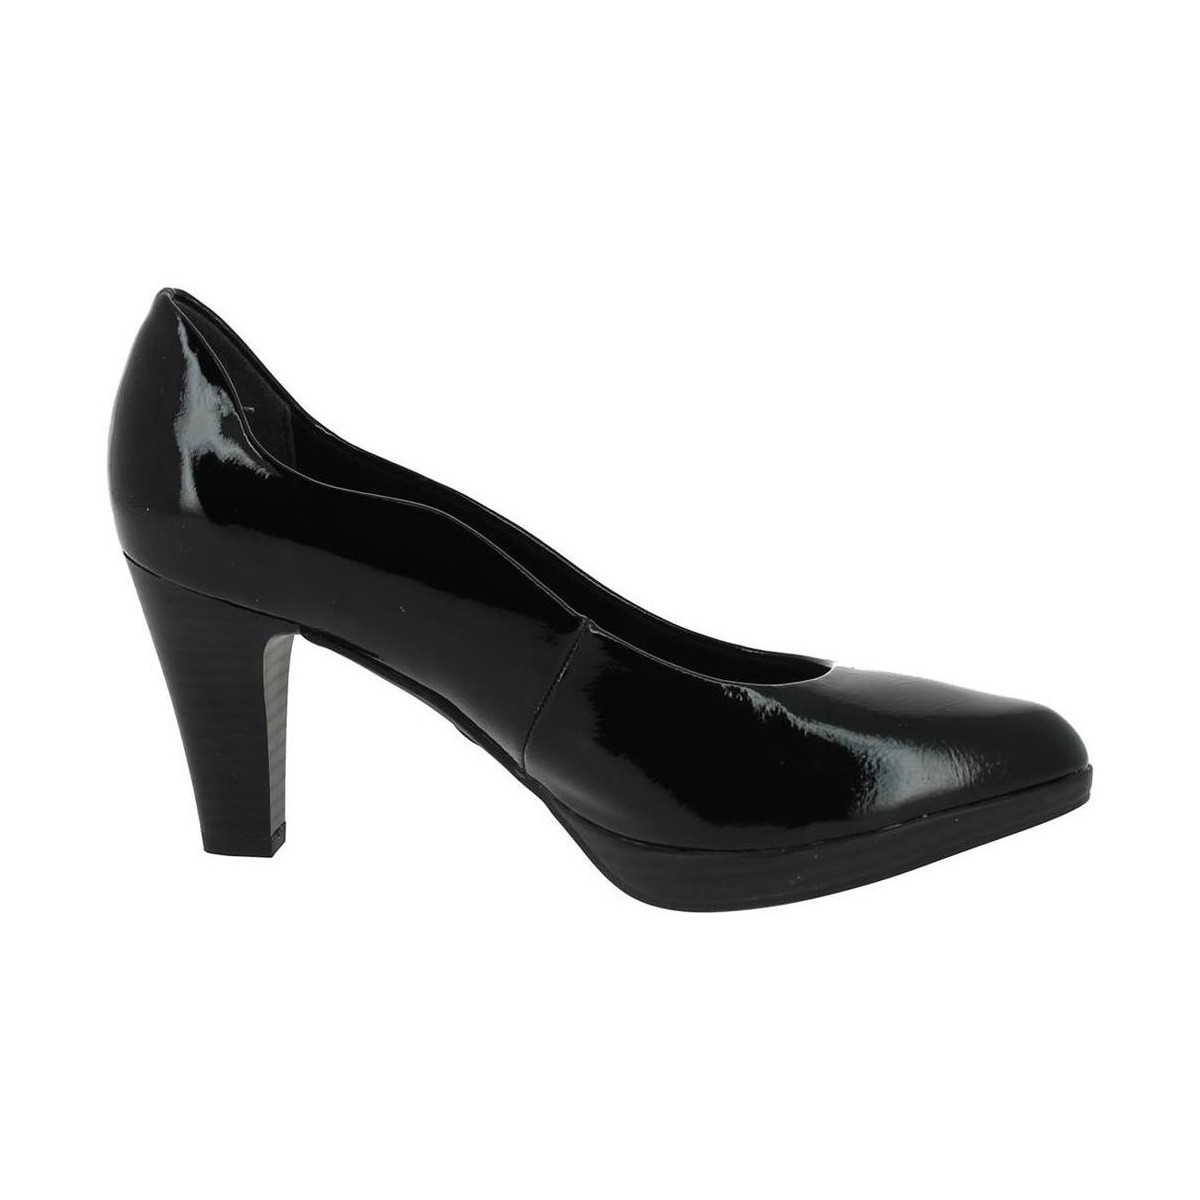 Chaussures Femme Tige : Synthétique ESCARPIN VERNI Noir